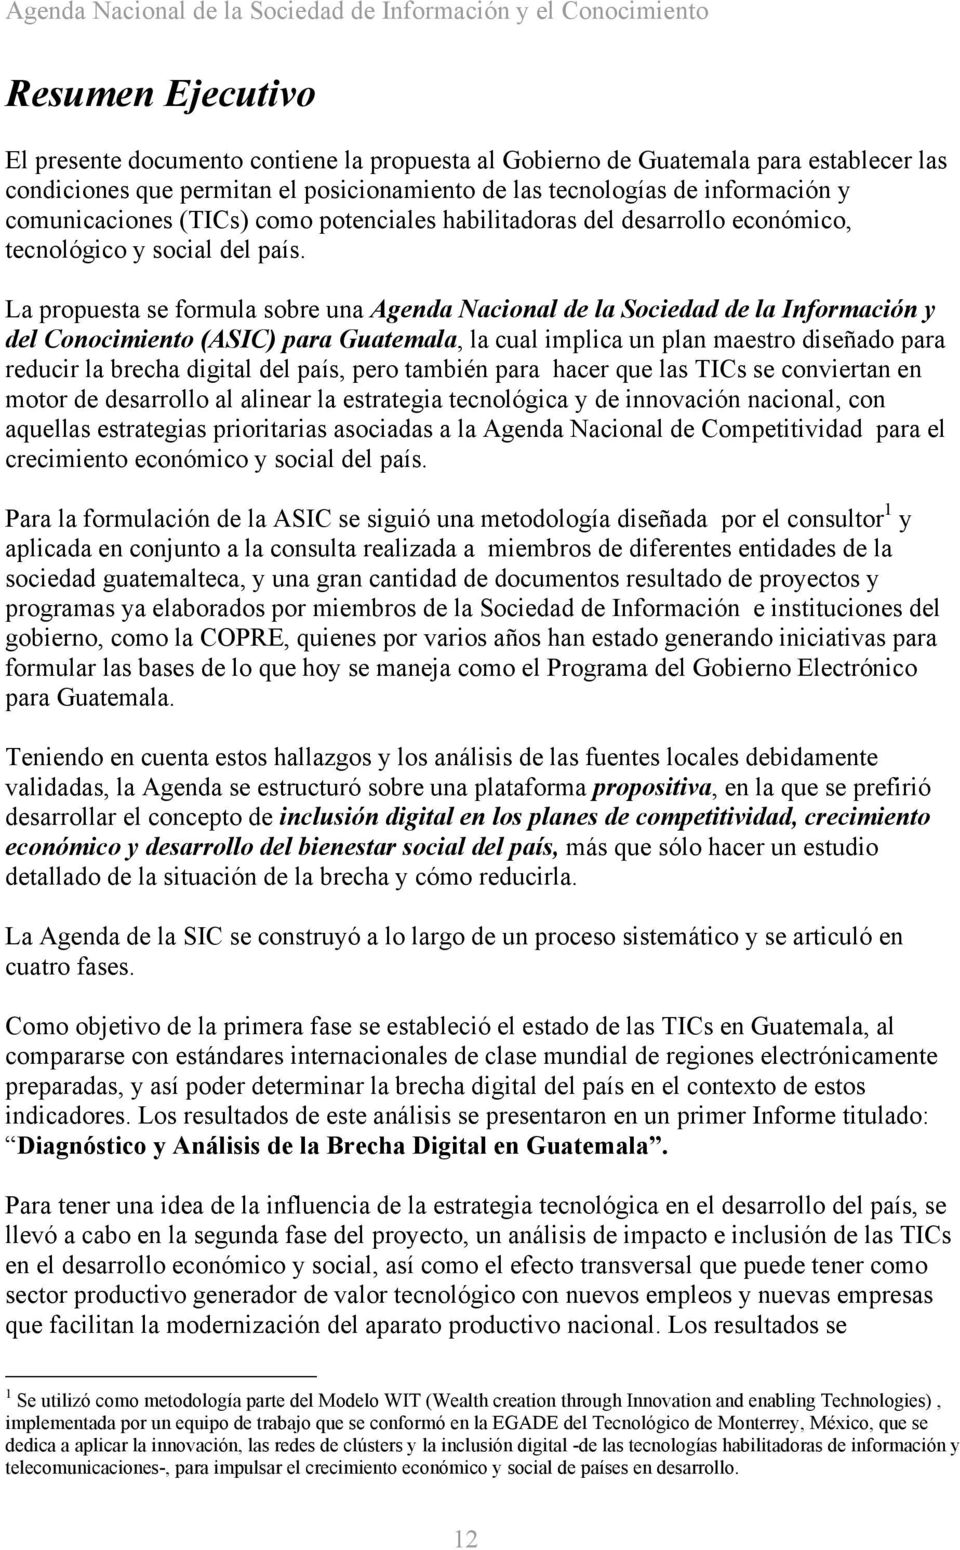 La propuesta se formula sobre una Agenda Nacional de la Sociedad de la Información y del Conocimiento (ASIC) para Guatemala, la cual implica un plan maestro diseñado para reducir la brecha digital